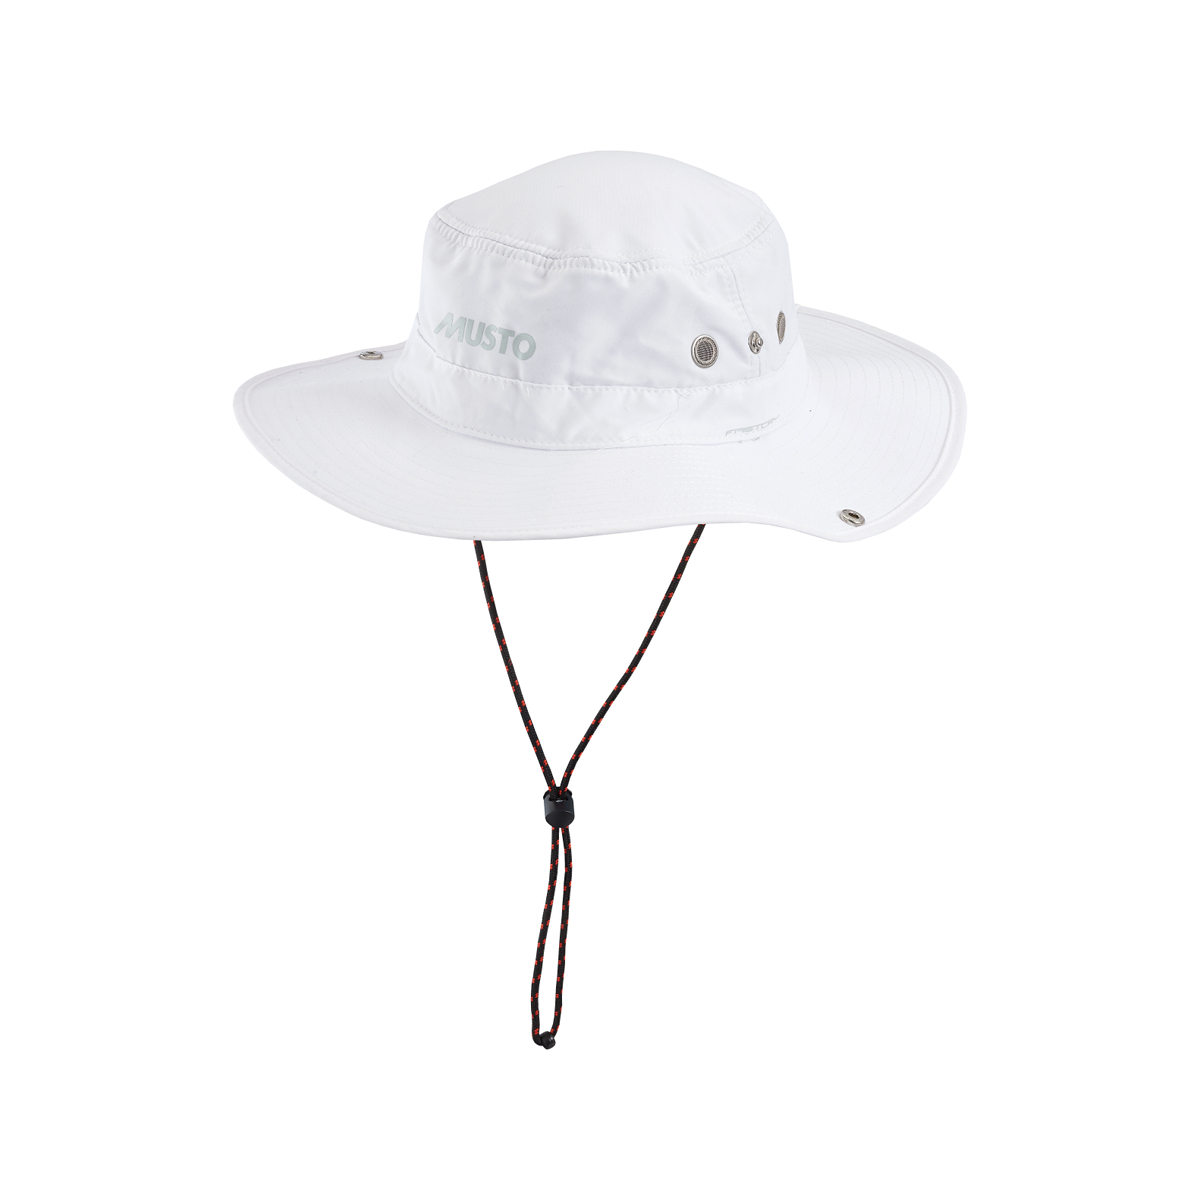 Musto Evolution FD Brimmed chapeau de voile blanc, taille M